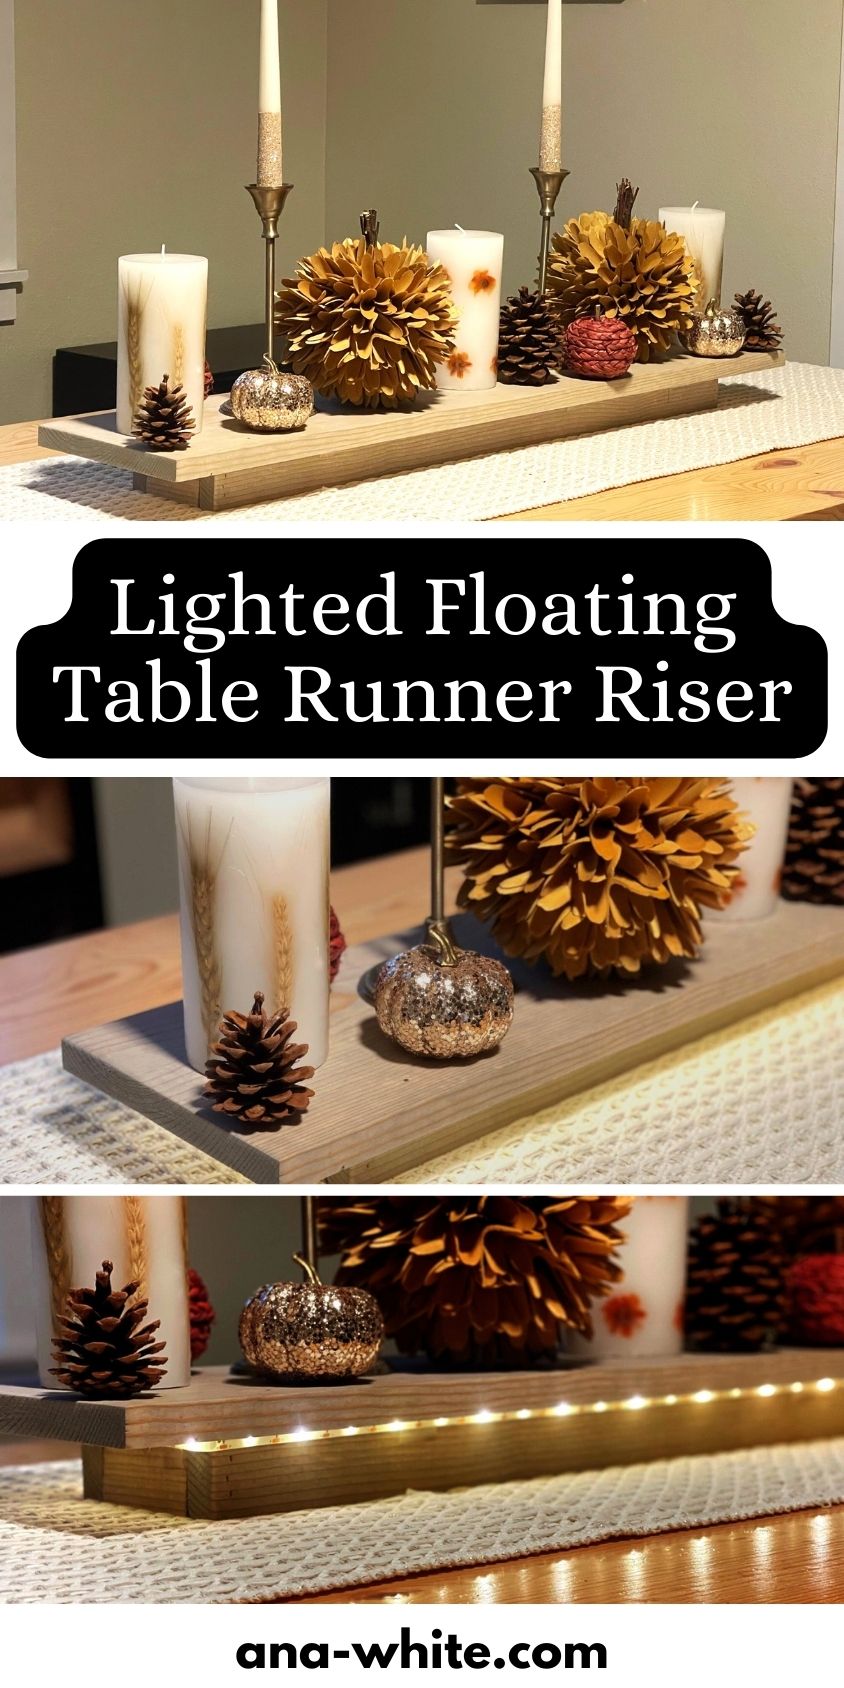 Lighted Floating Table Runner Riser